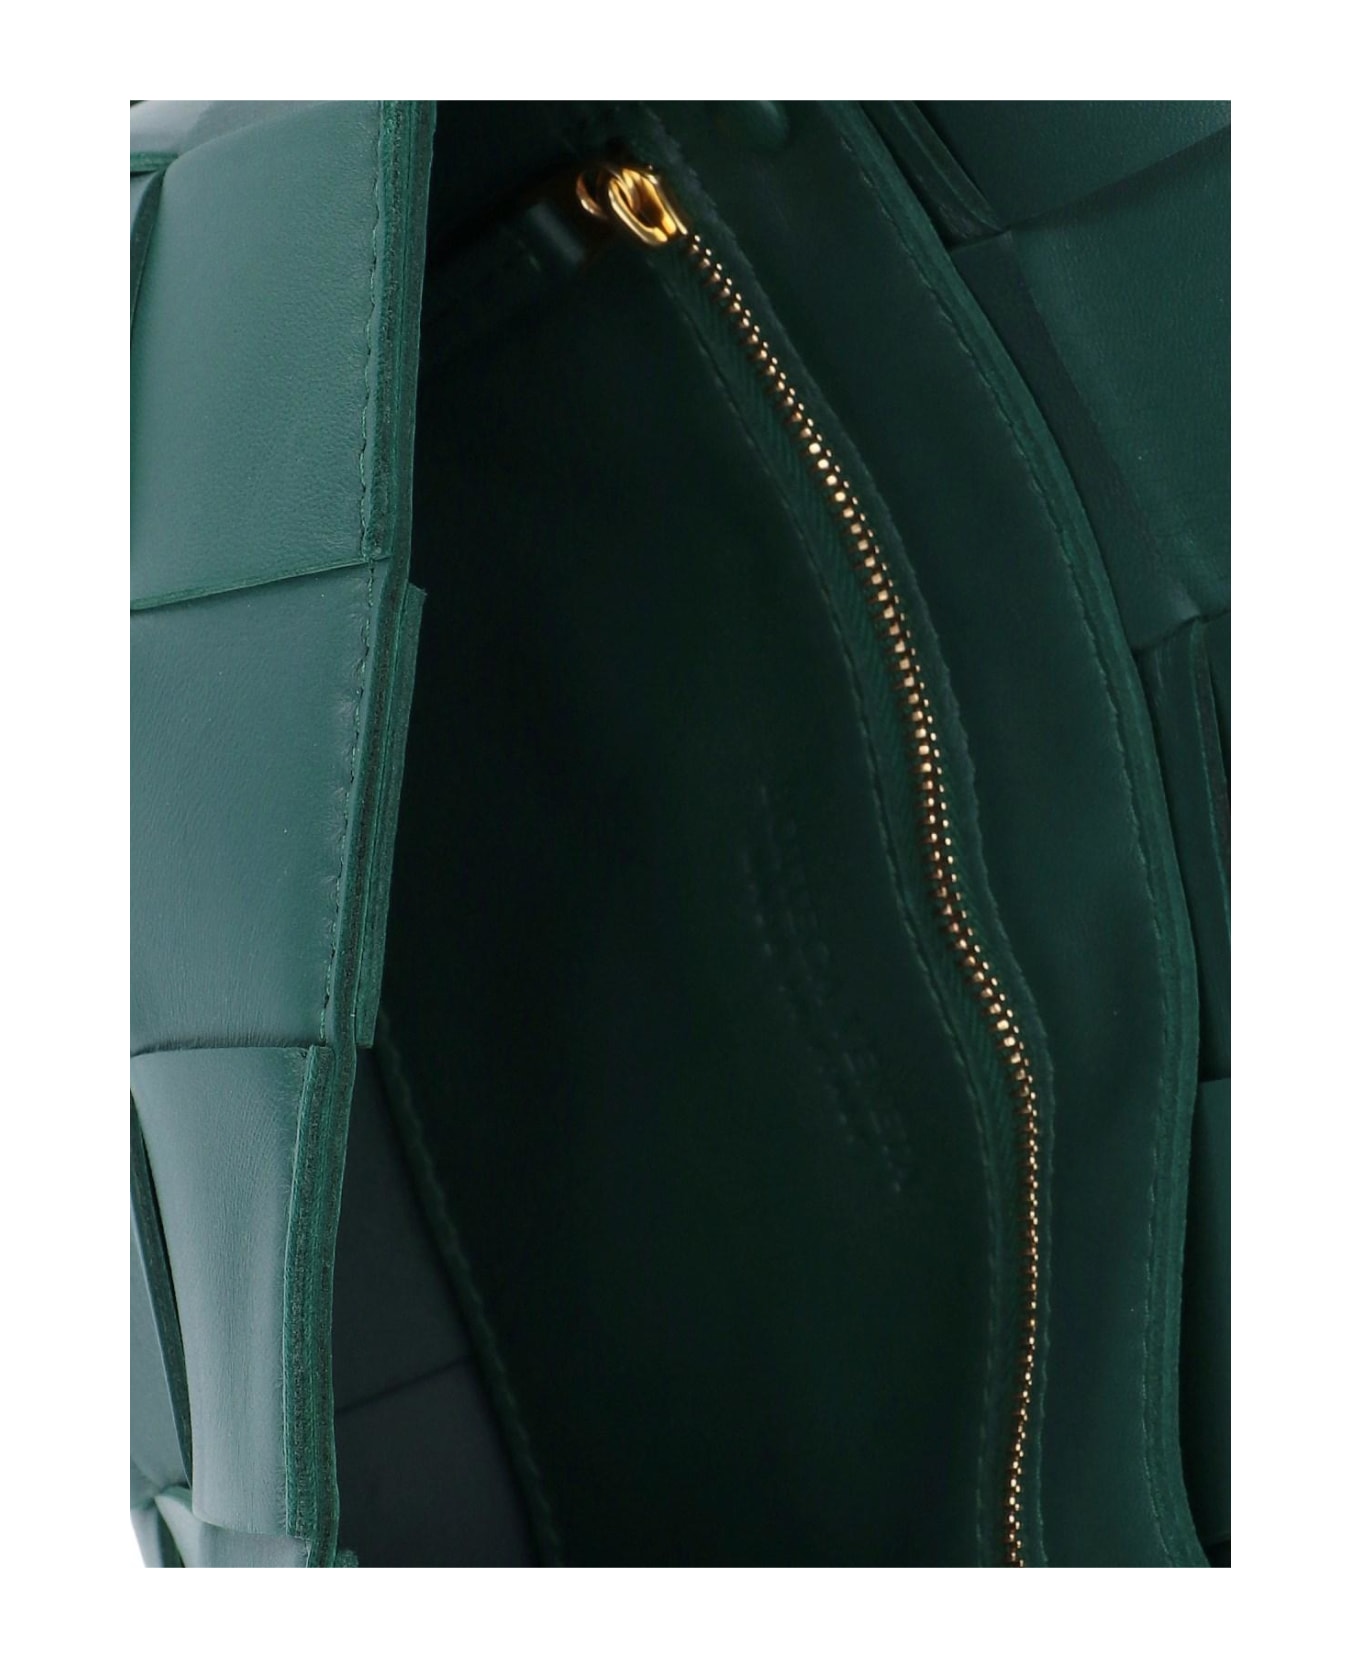 Bottega Veneta Casette Cross-body Leather Bag With Woven Pattern - Green